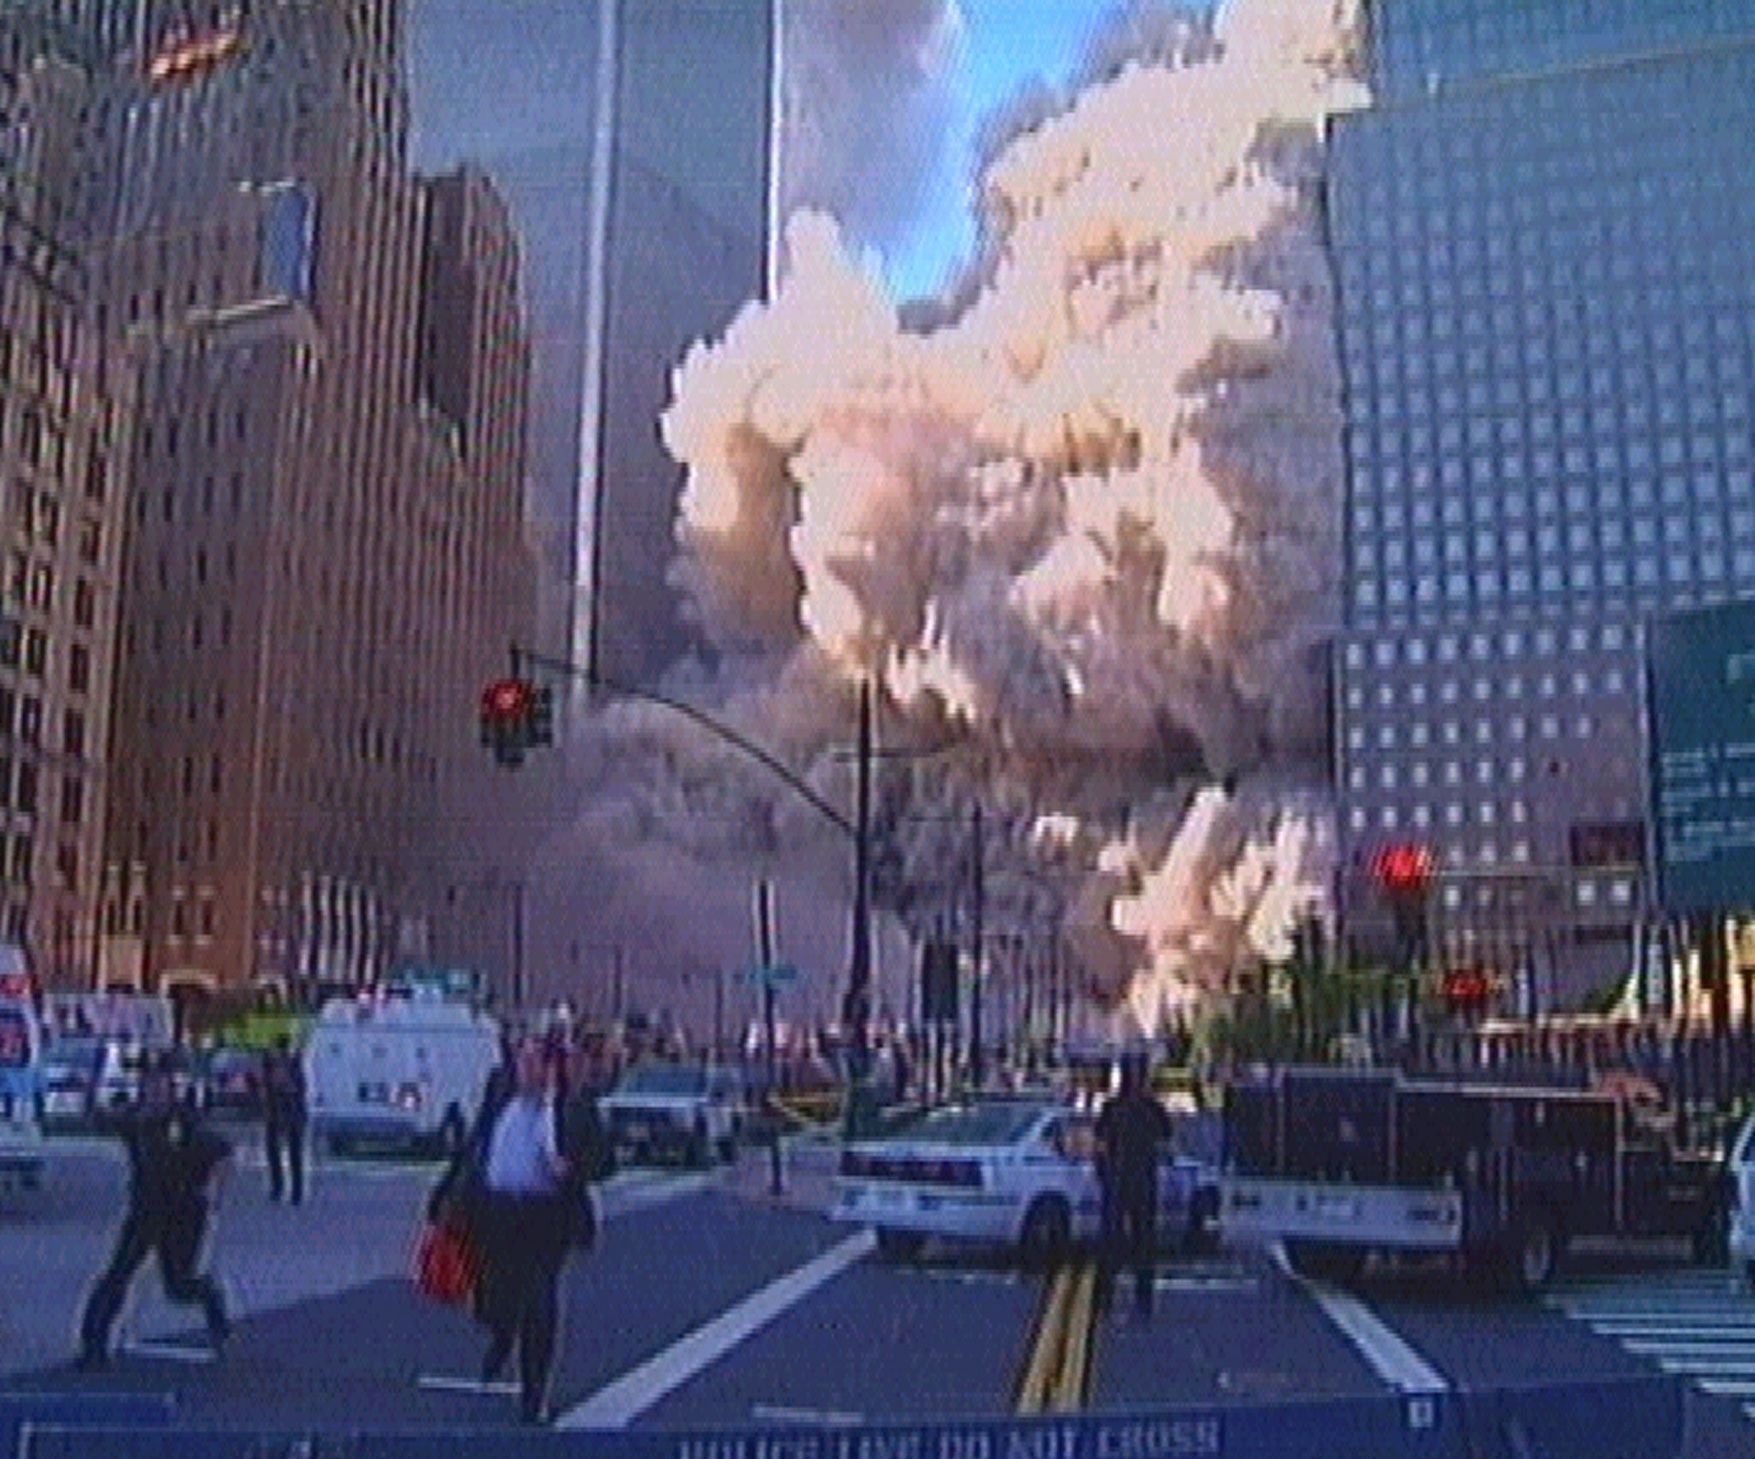 Fotogalerie / 11. 9. 2001 / 11. září 2001 / Teroristický útok / Terorismus / USA / Historie / Výročí / Reuters / 9